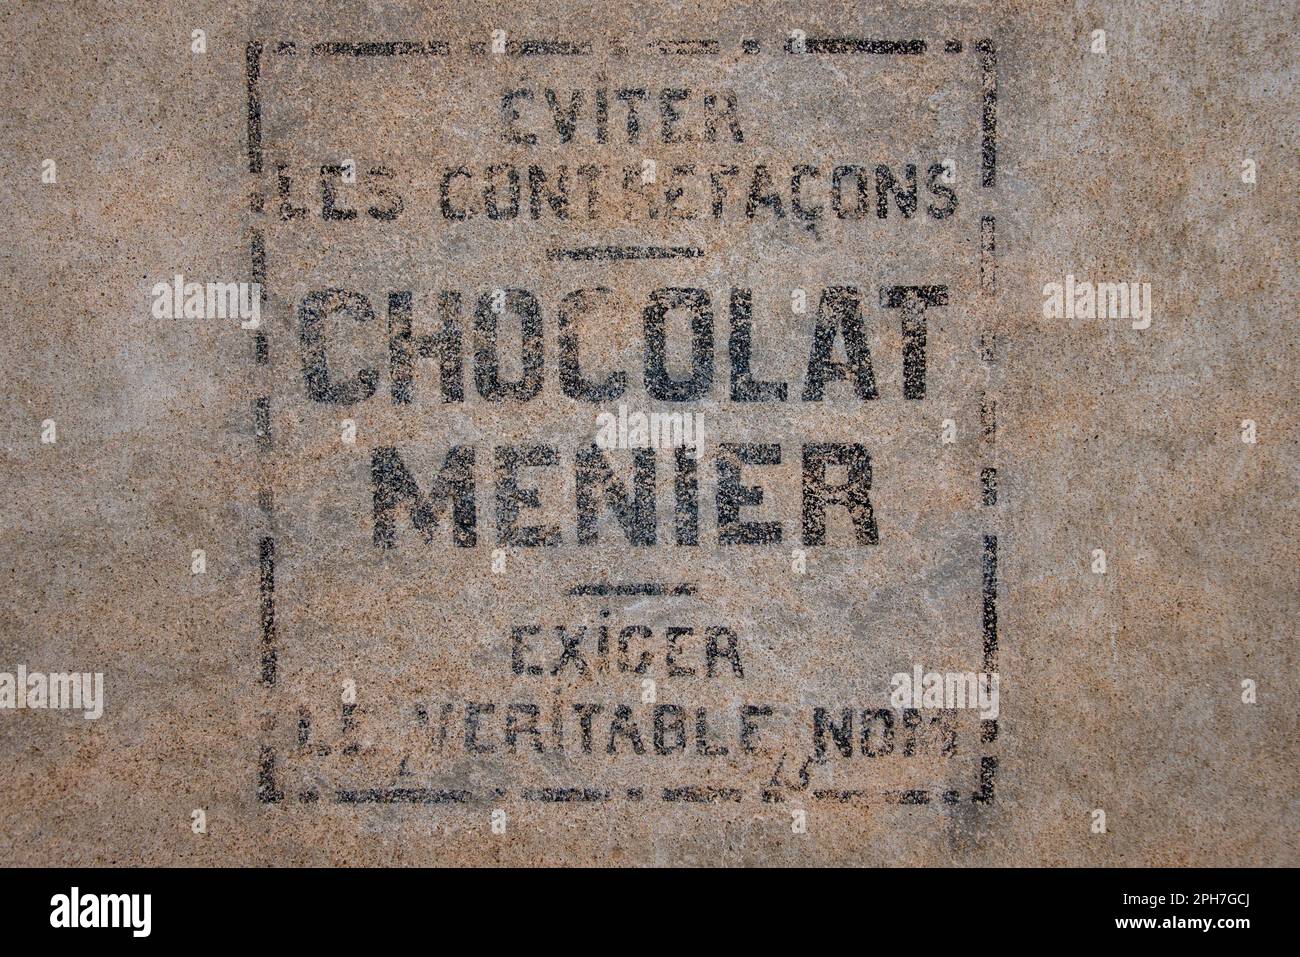 Chocolat Menier: Ein verblichenes Zeichen einer vergessenen Süßwarenmarke an einer Fassade im alten Dorf Roquebrun im Orb-Flusstal Südfrankreichs. Stockfoto